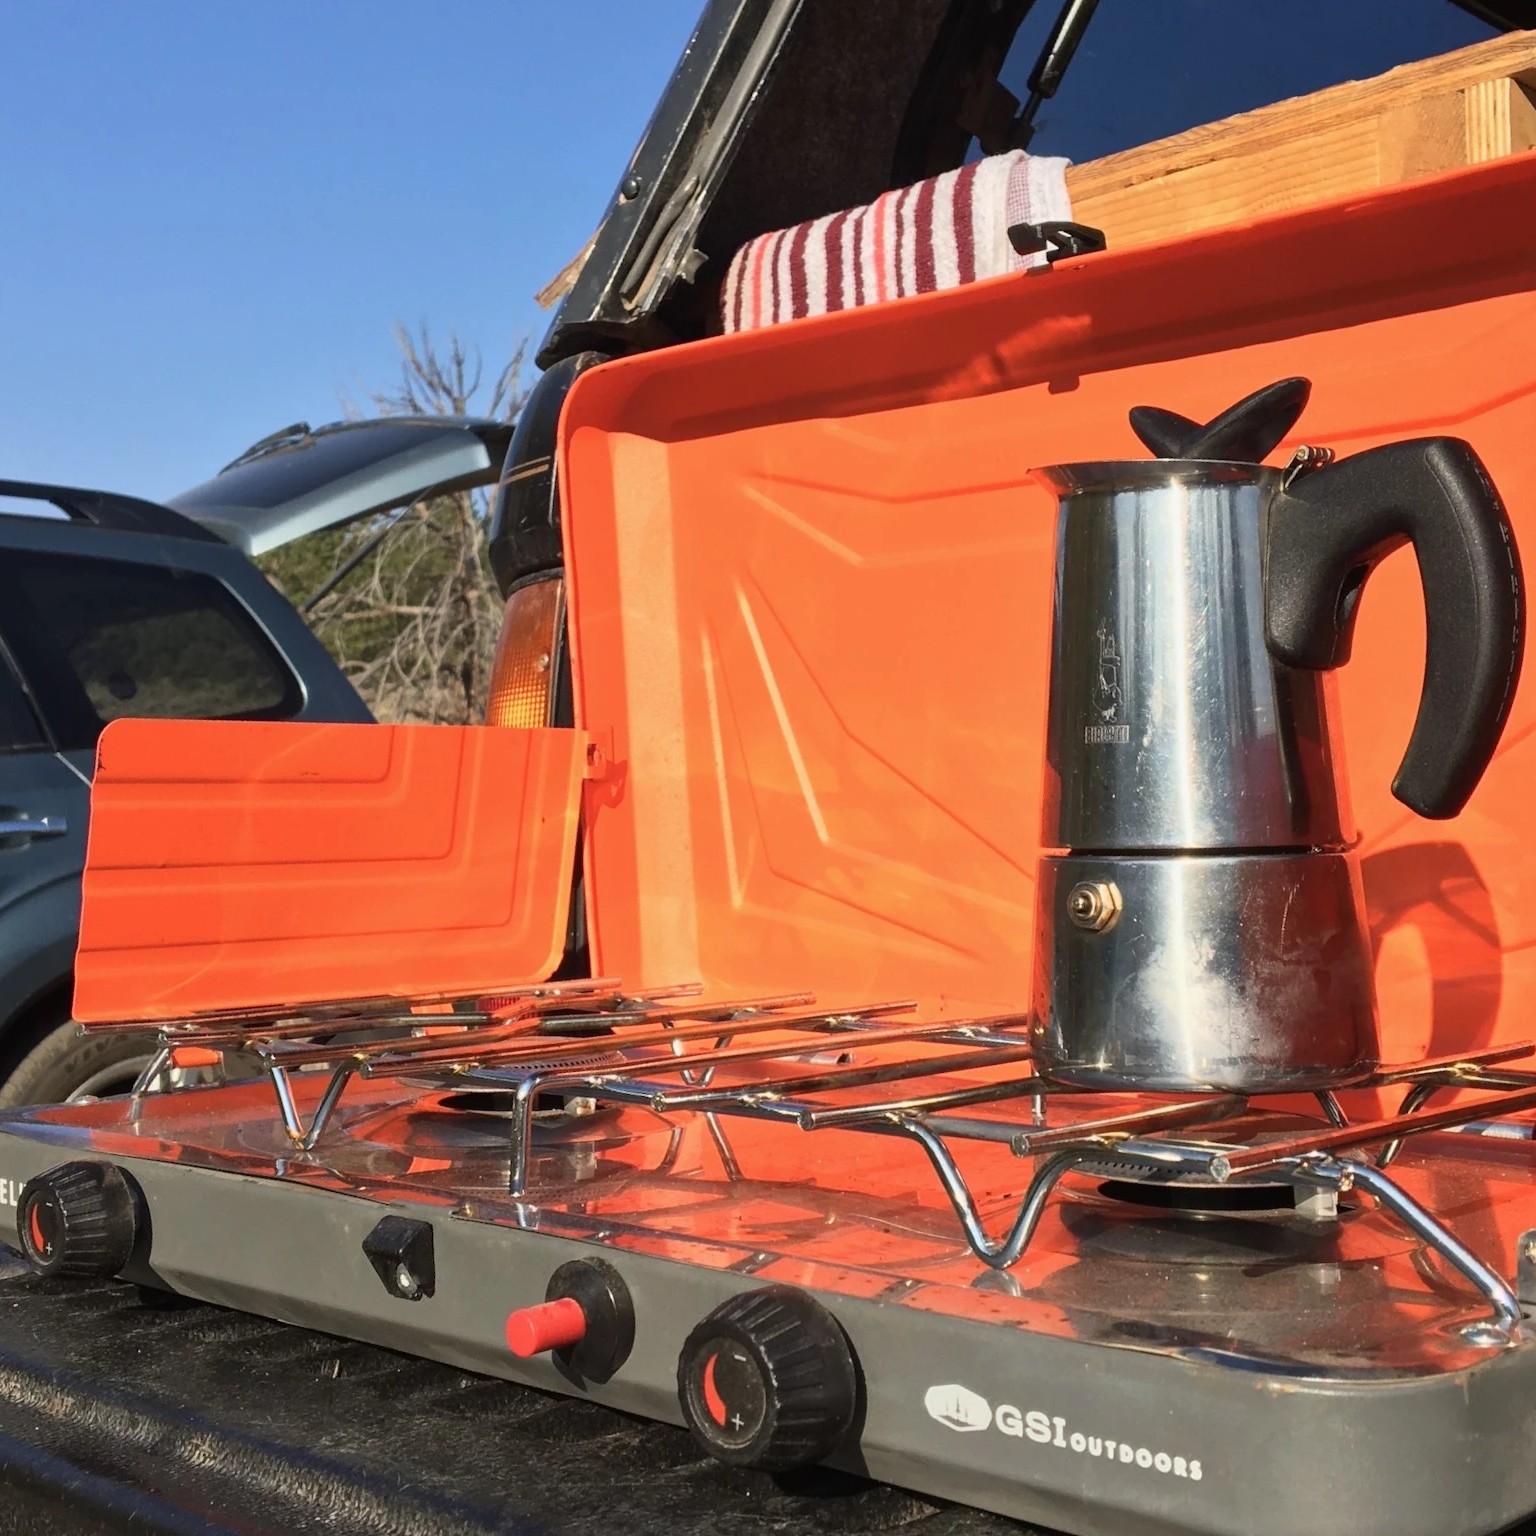 GSI Outdoors Selkirk 540i Dual Burner Camping Stove